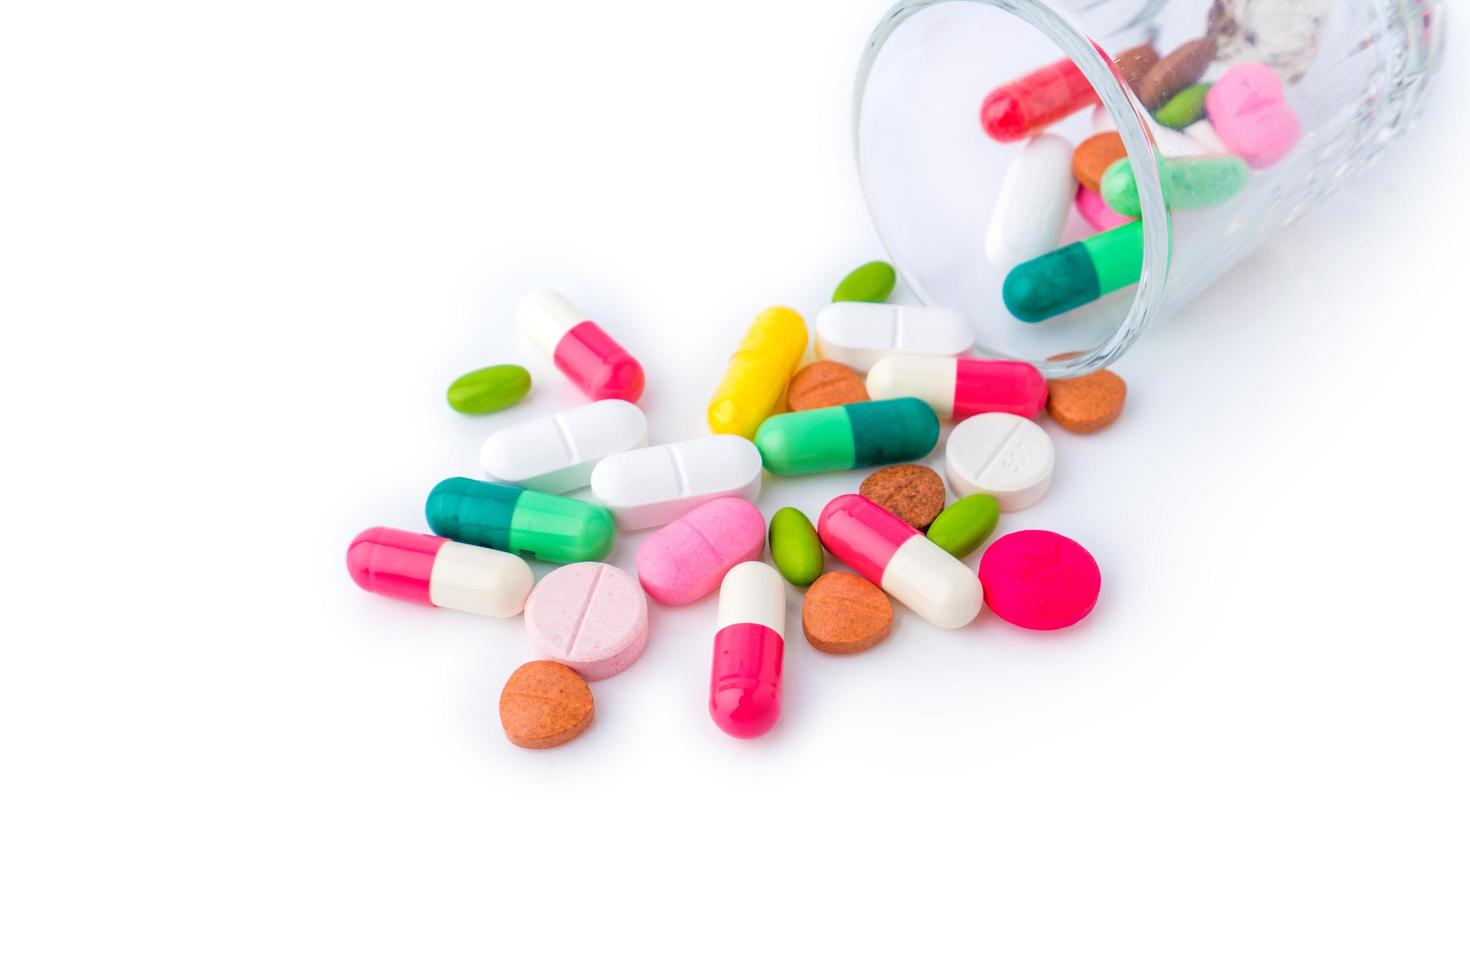 olika tabletter blanda hög droger piller kapslar terapi läkare influensa antibiotika apotek medicin medicinsk på vit bakgrund foto